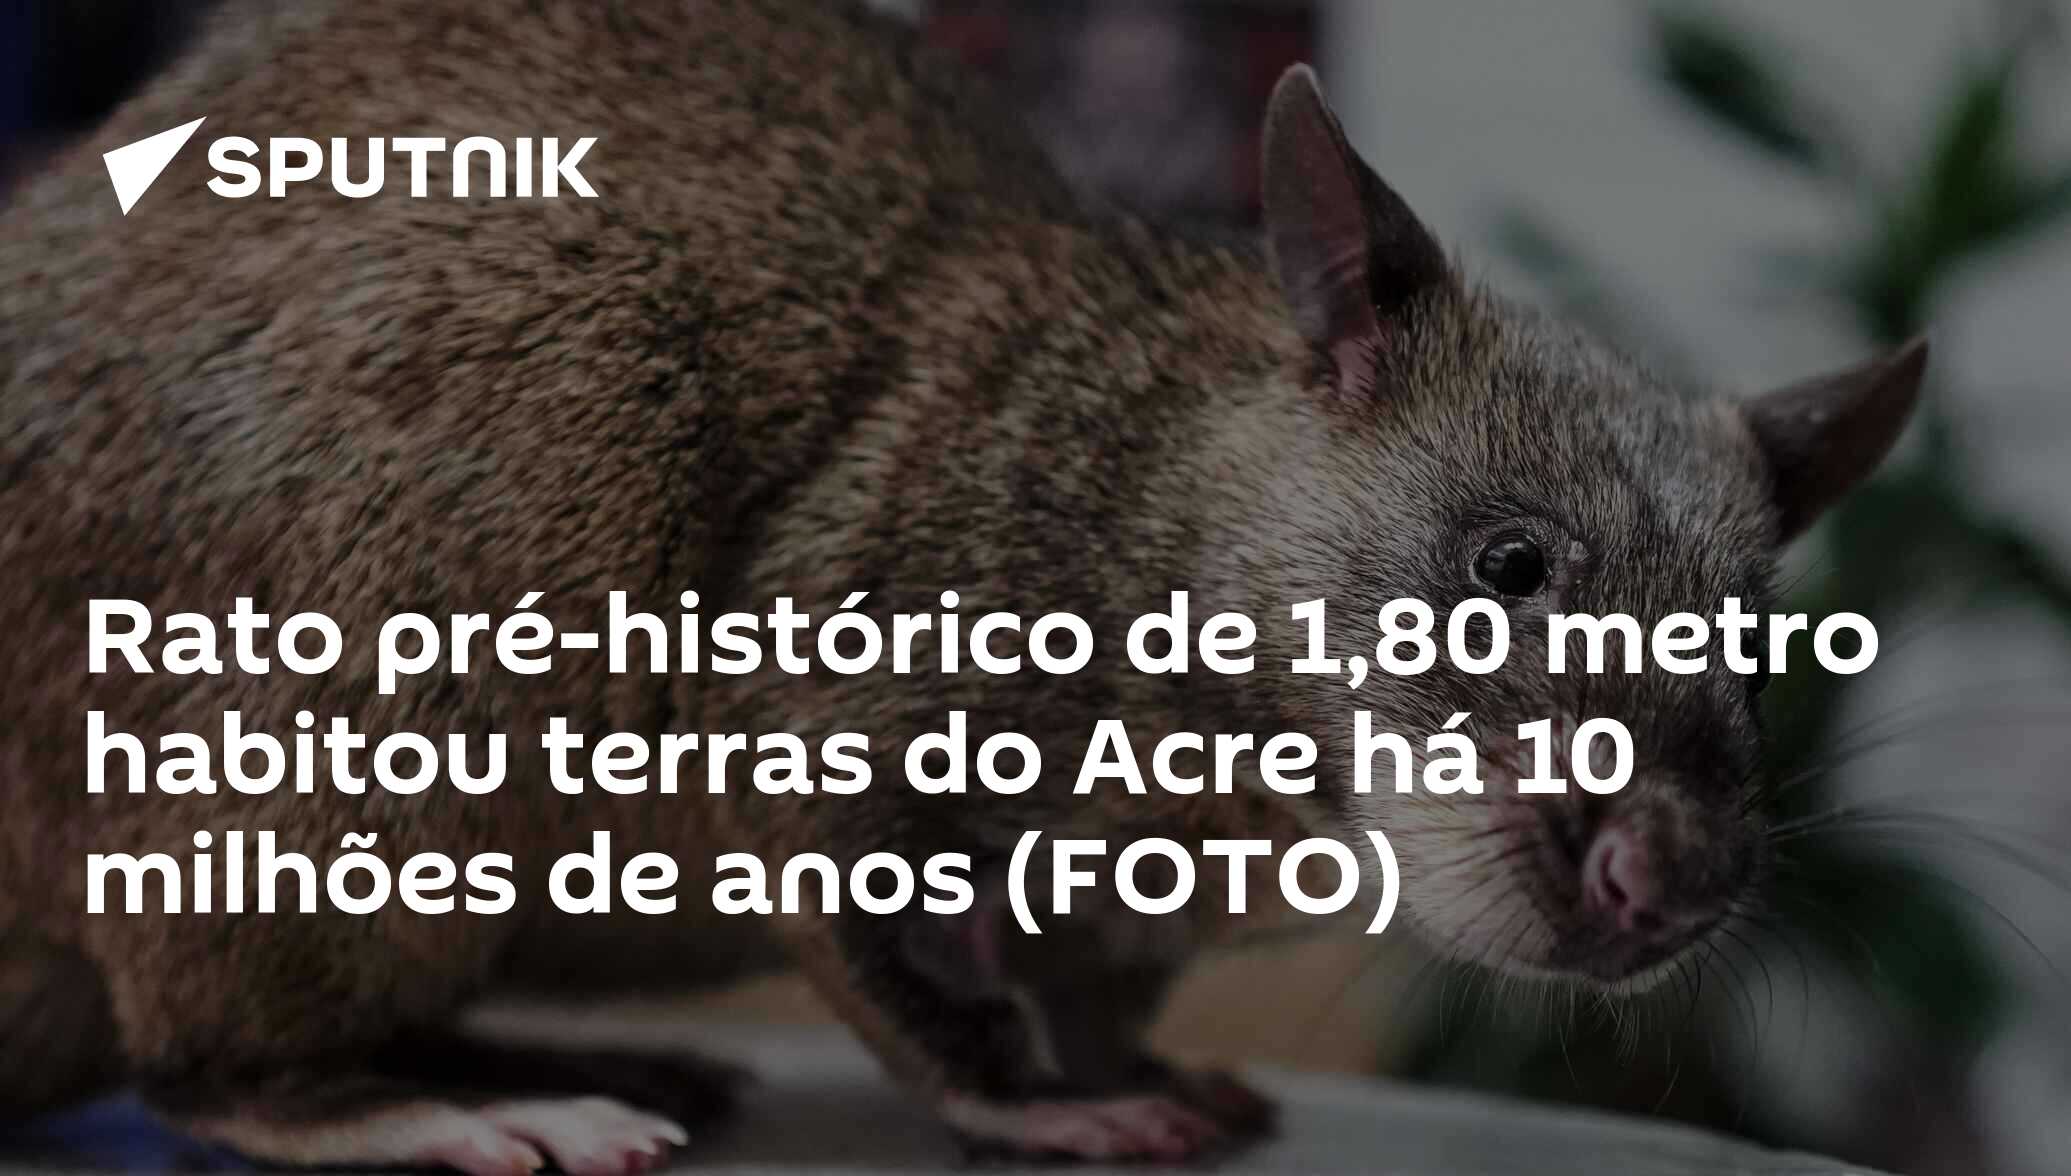 Há 10 milhões de anos, o Acre era habitado por ratos pré